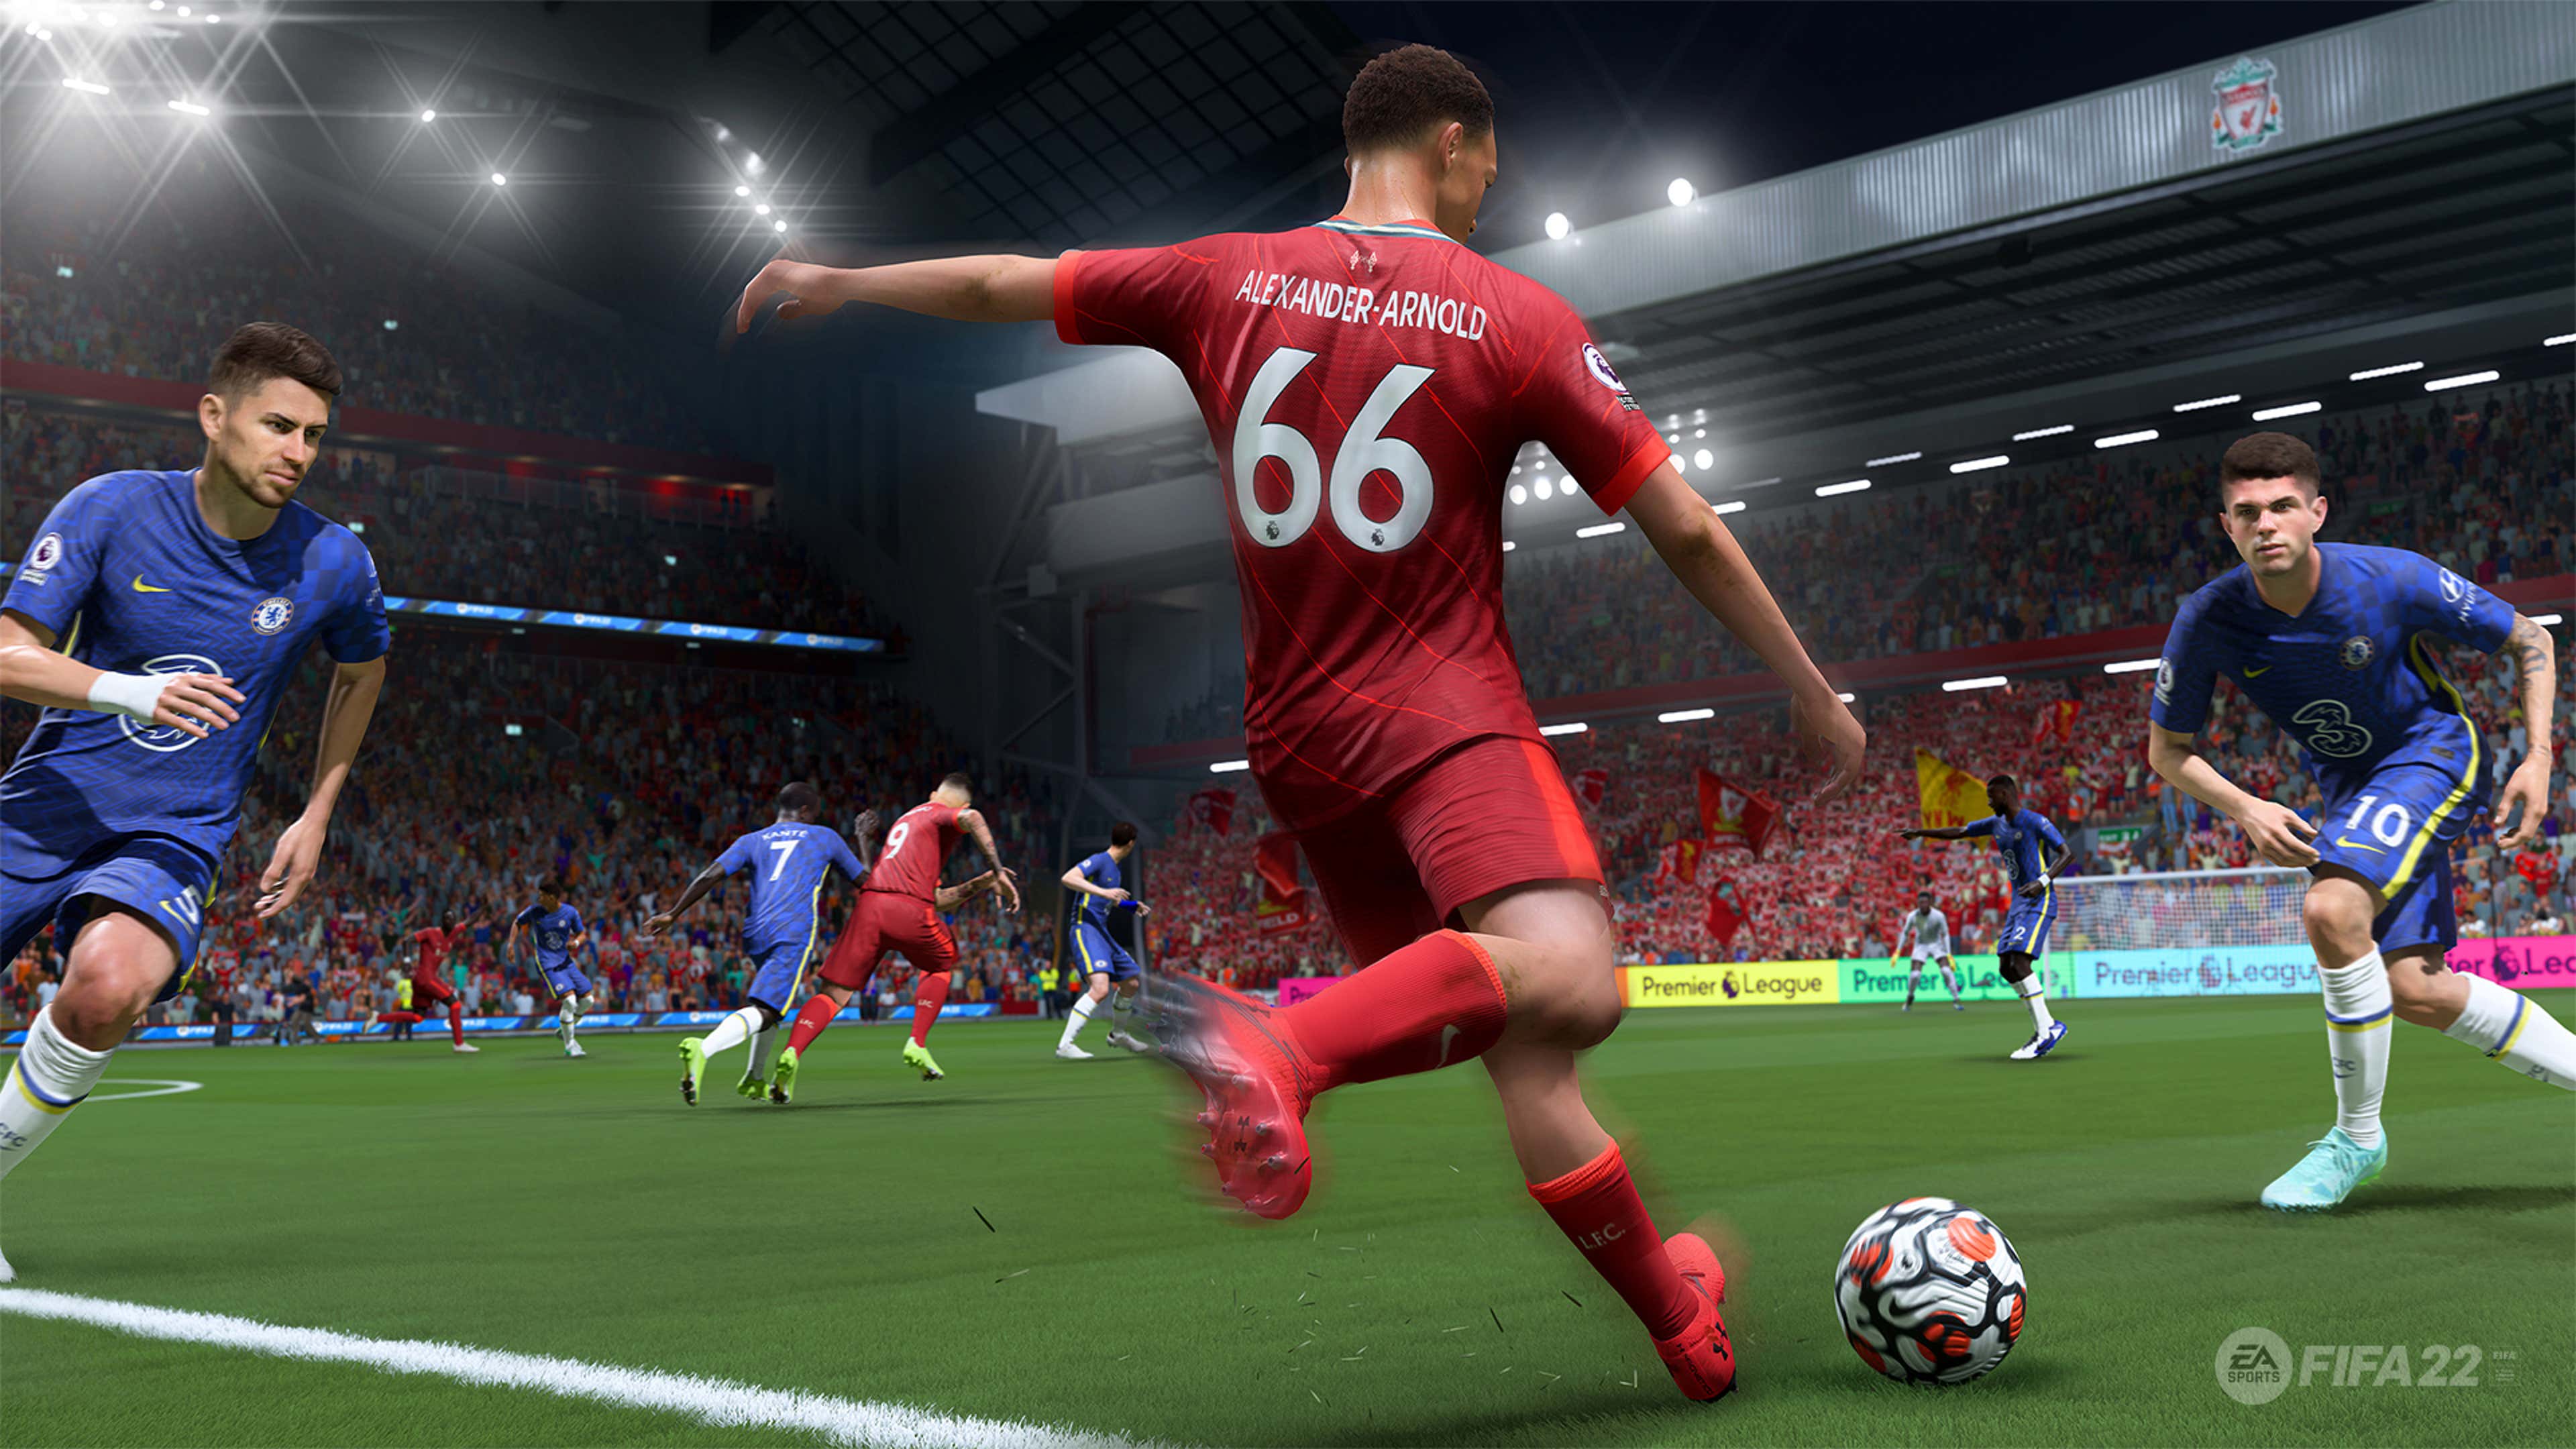 FIFA 22 - PC · EA Sports · El Corte Inglés